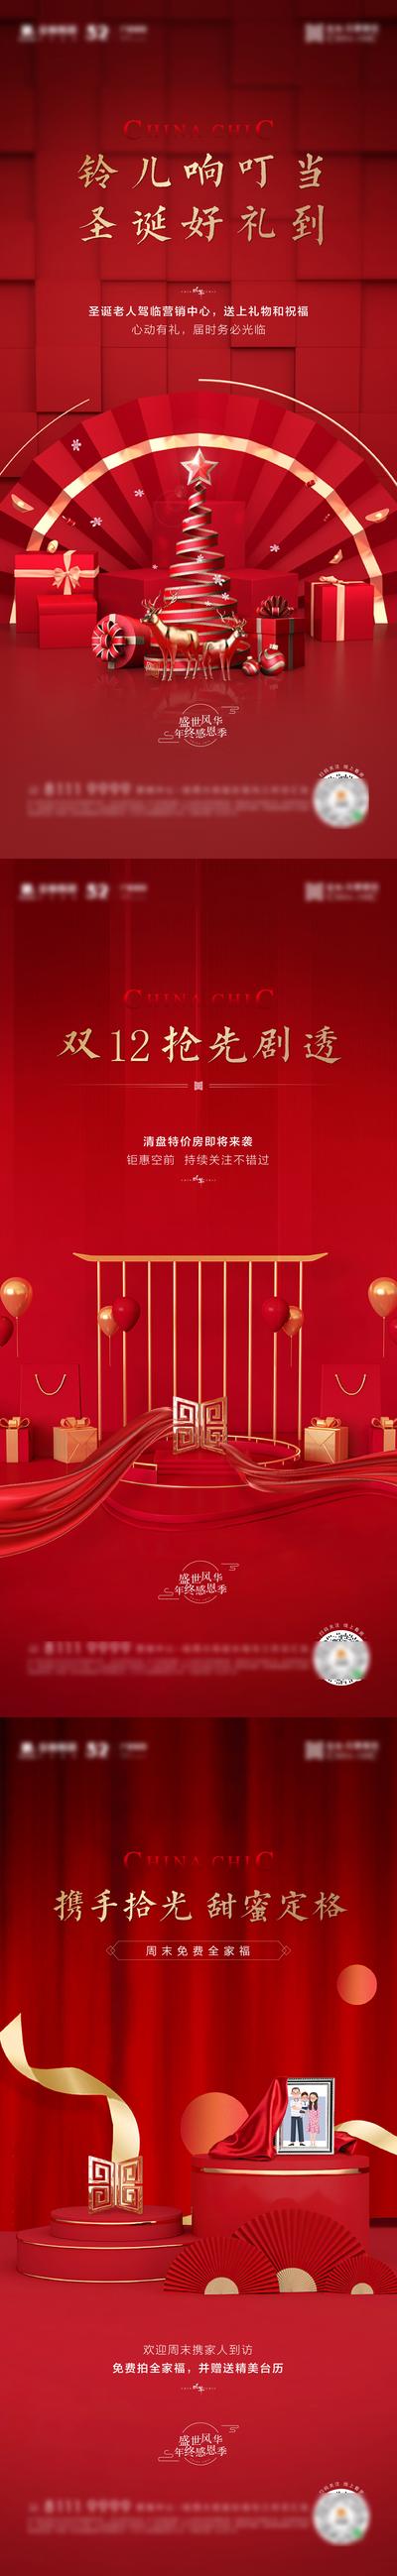 南门网 海报 地产 西方节日 圣诞节 平安夜 新年 双十二 促销 礼品 红金